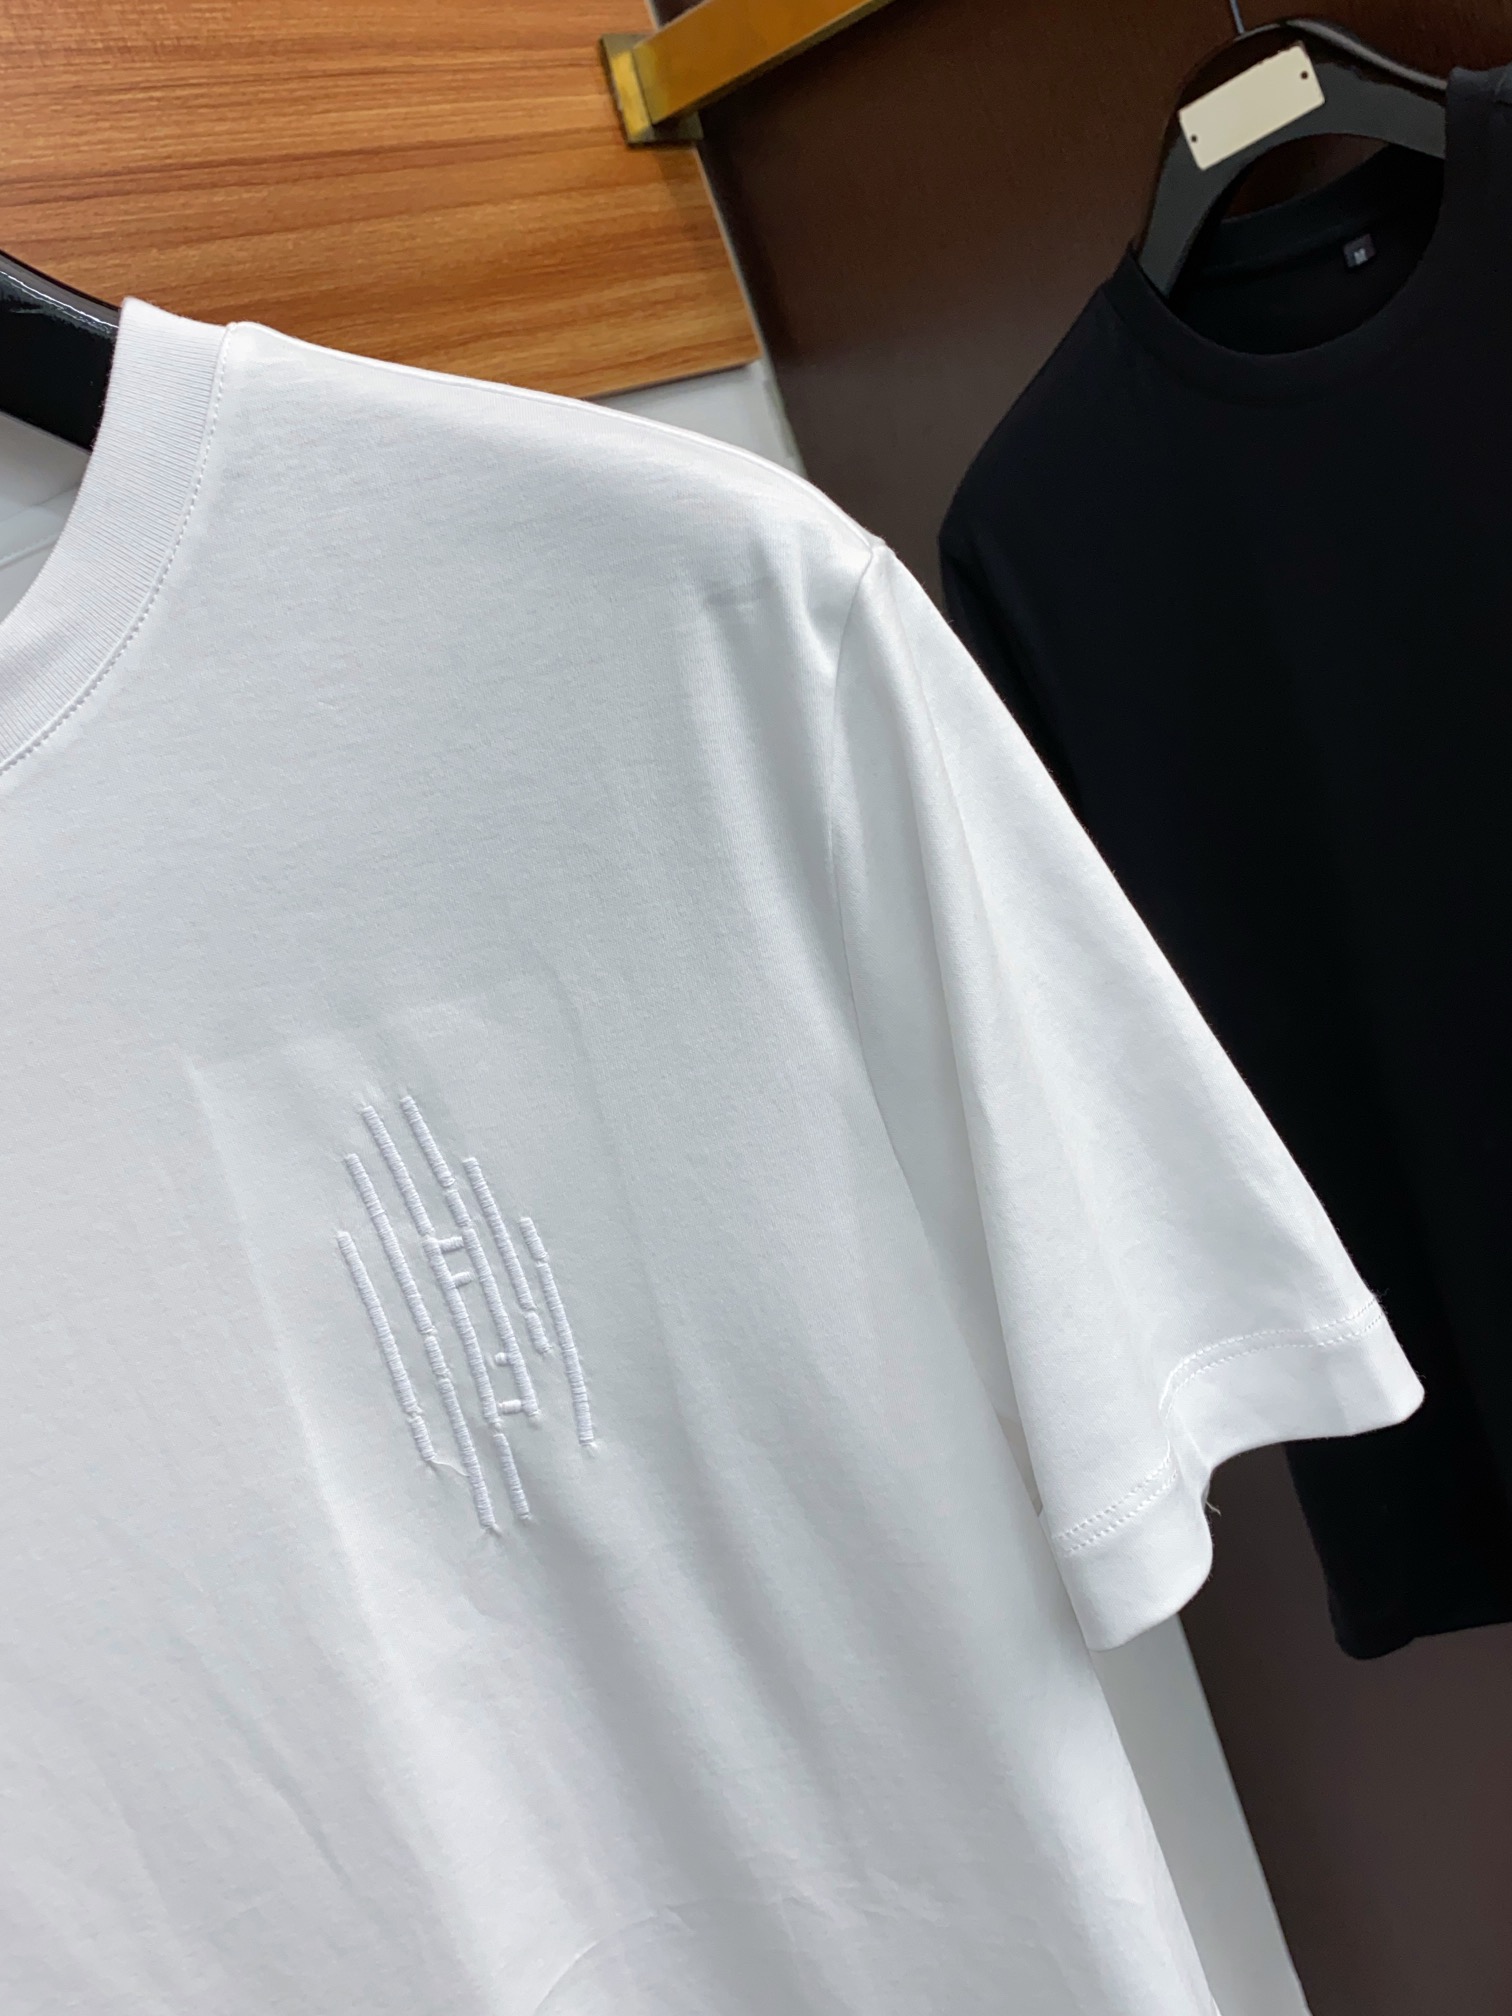 fendi ワイシャツスーパーコピー トップス 綿100% プリント 短袖 ゆったり シンプル 柔らかい メンズ ホワイト_4